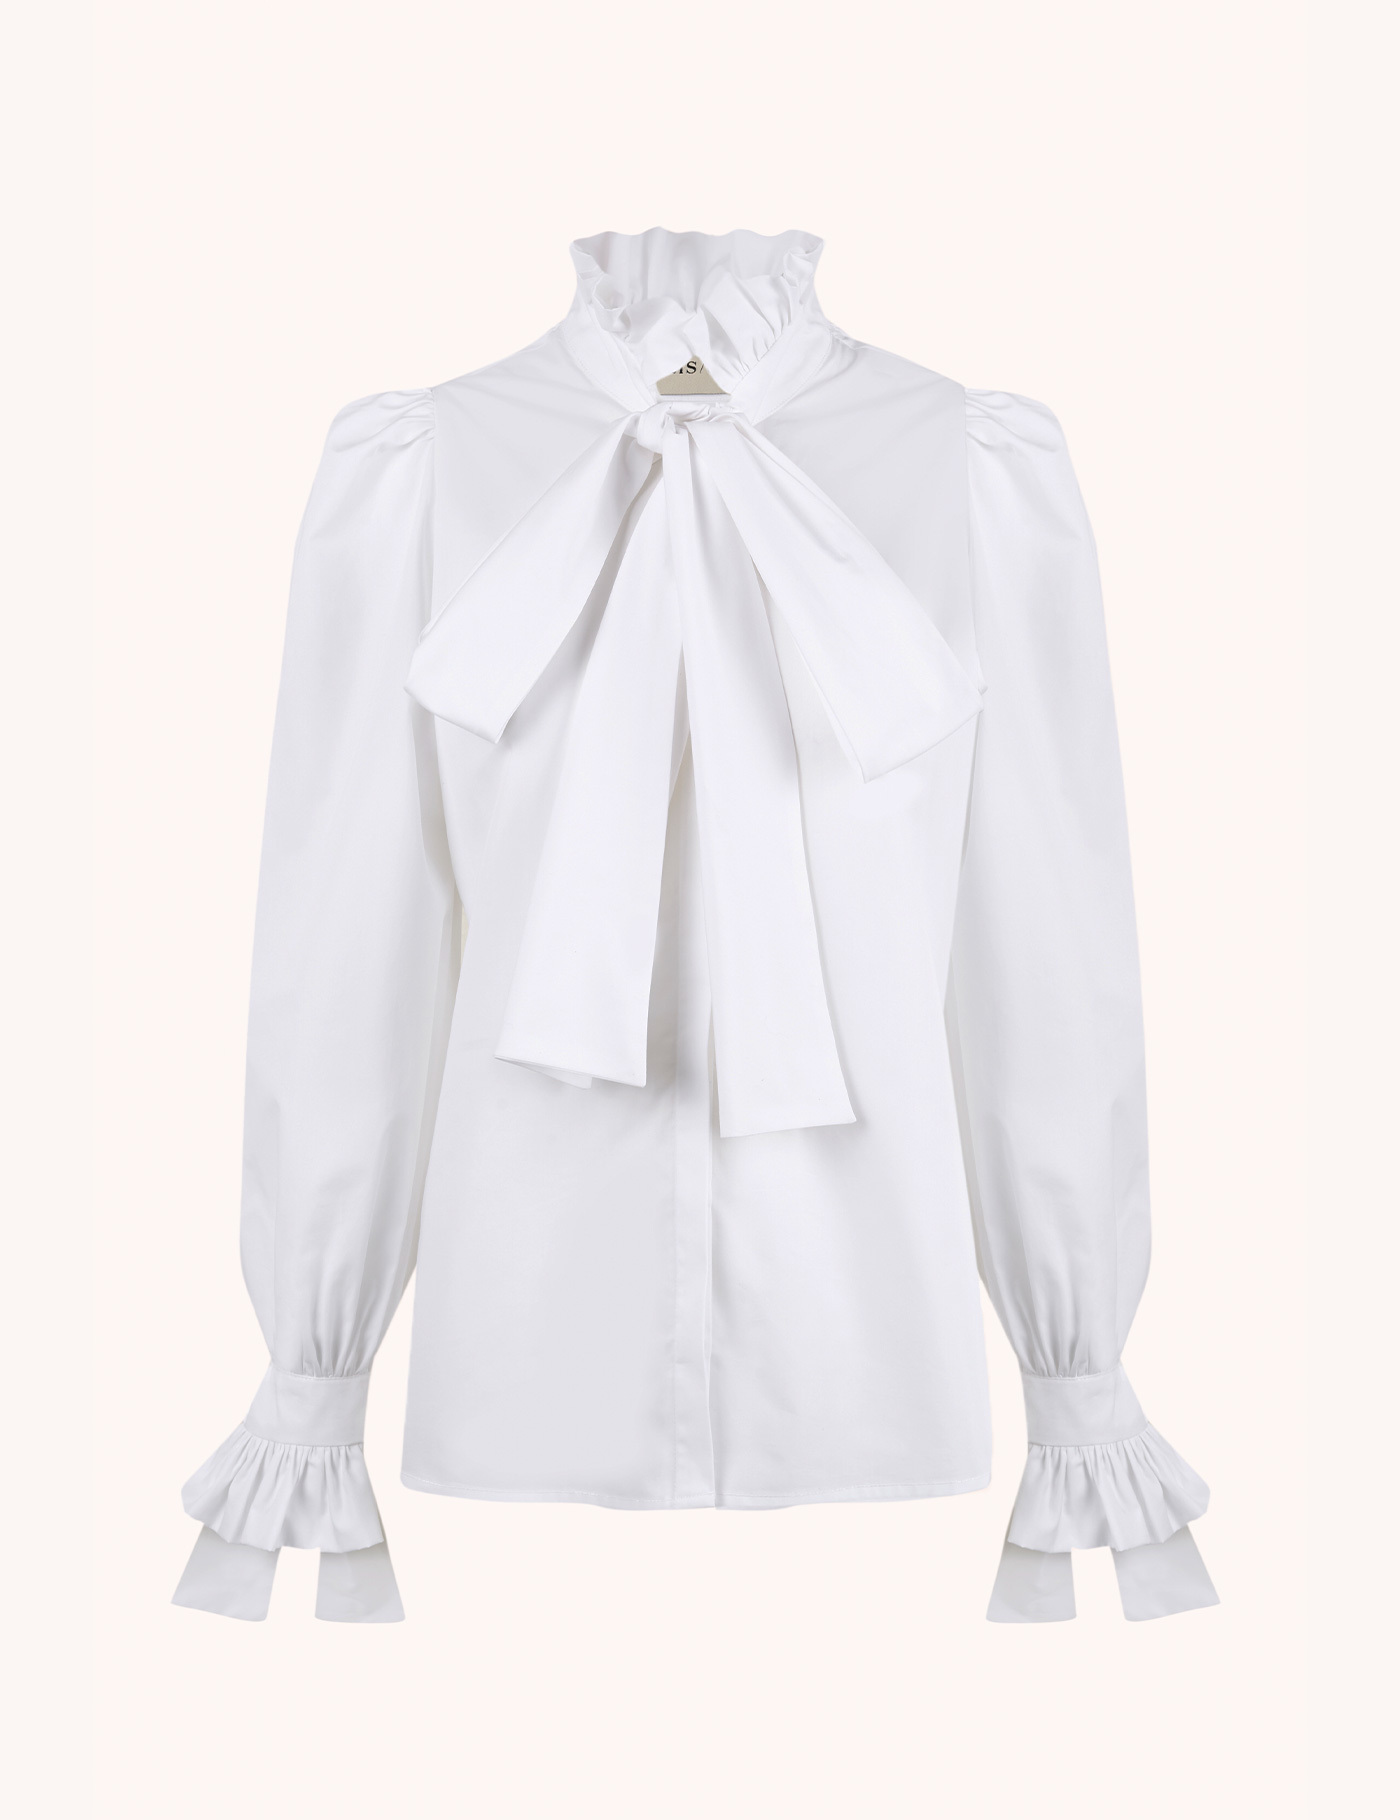 Camisa blanca de Paris / 64 (109 euros, con el descuento del black friday 92,65 euros).